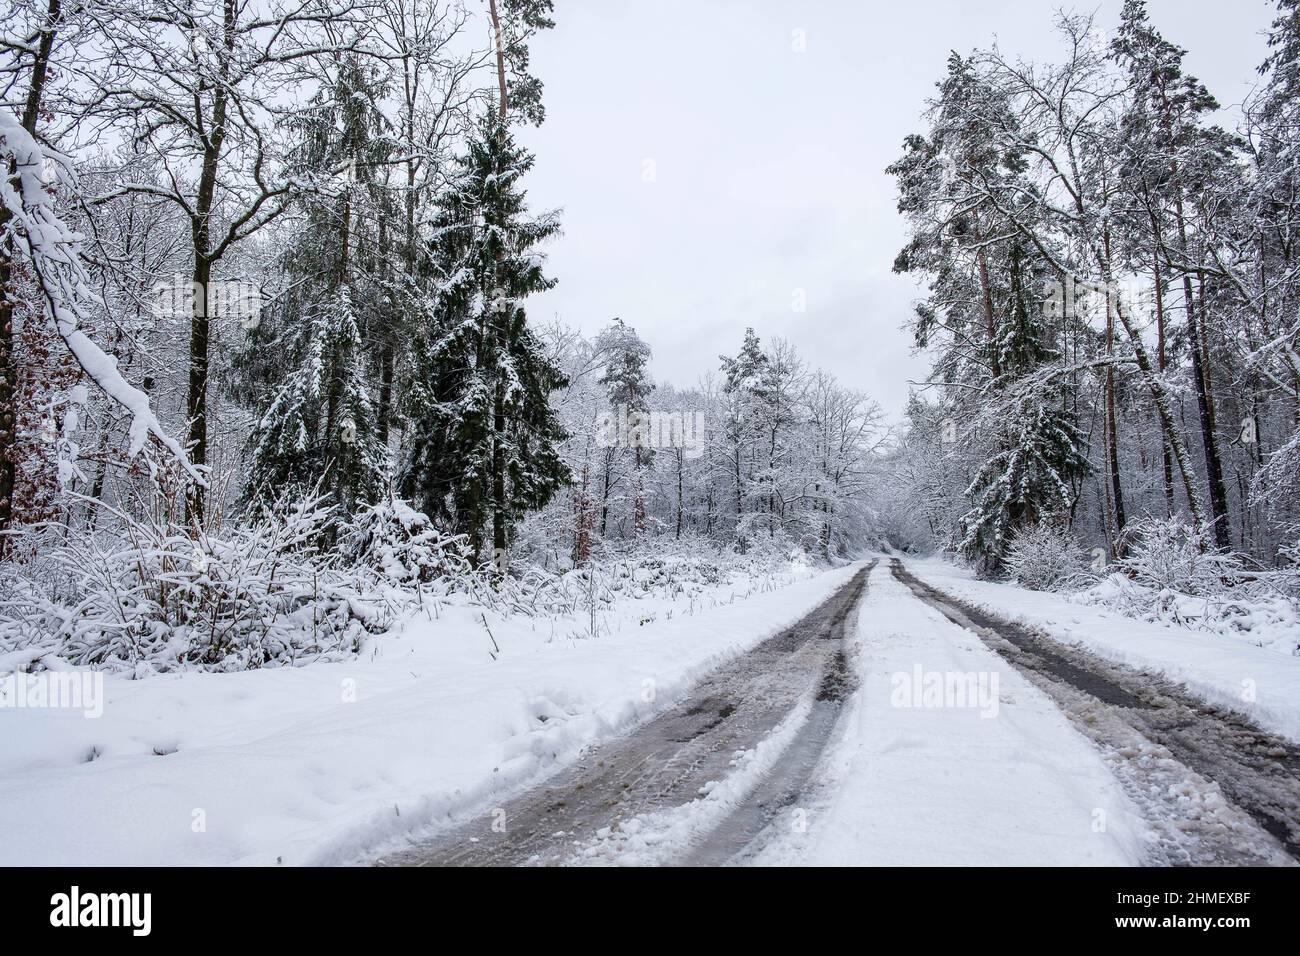 Neve lungo la rete stradale secondaria rotte secondarie non degagees la neige est sur les routes et sur le bitume Foto Stock